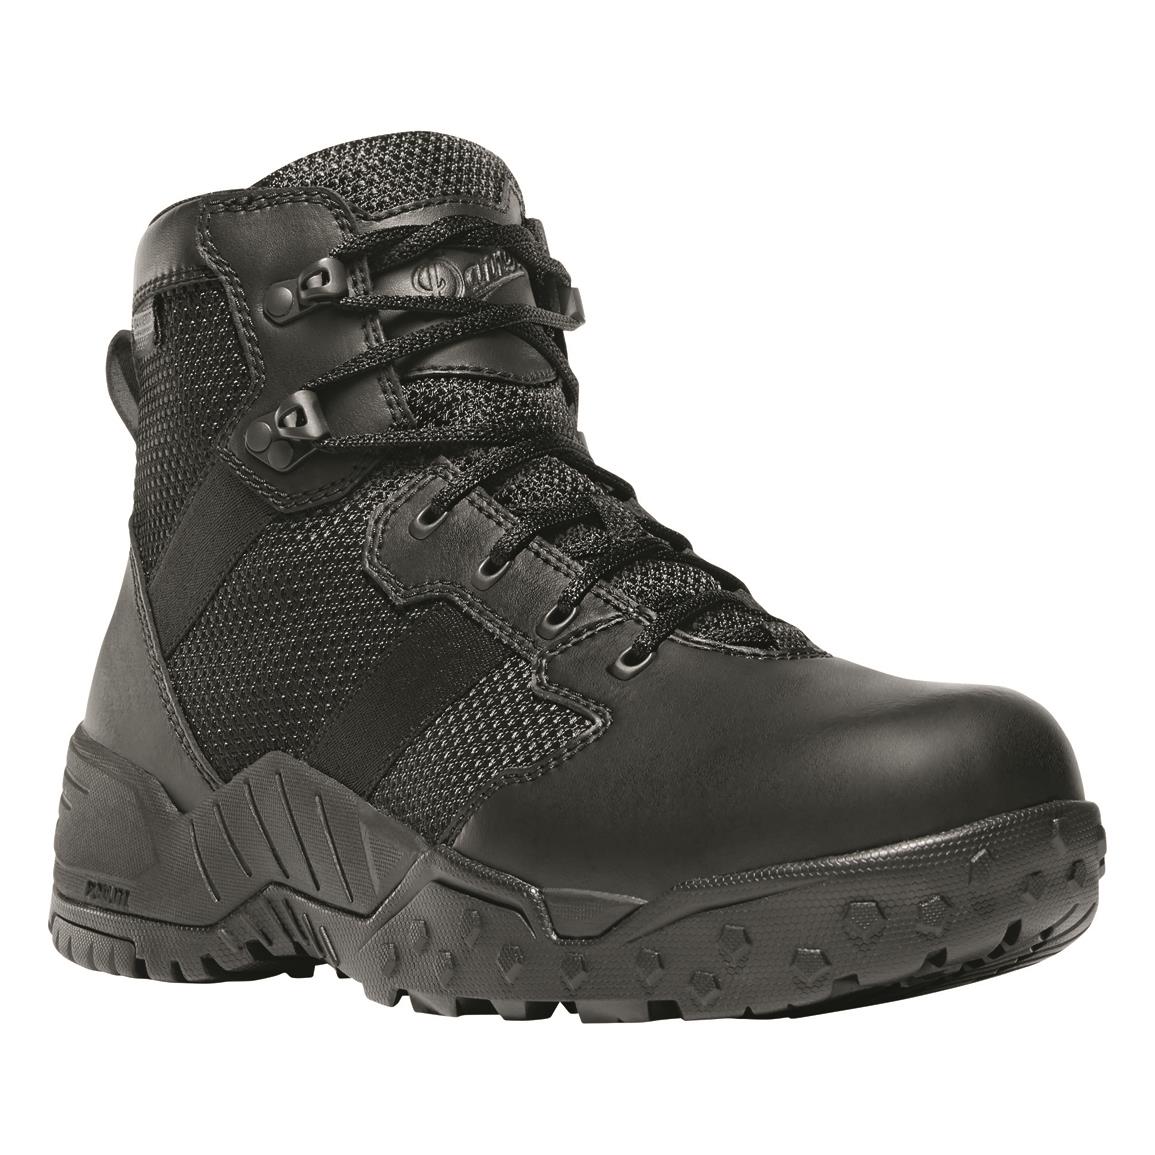 Danner Men's Scorch Side-zip 6" Waterproof Tactical Boots, Black